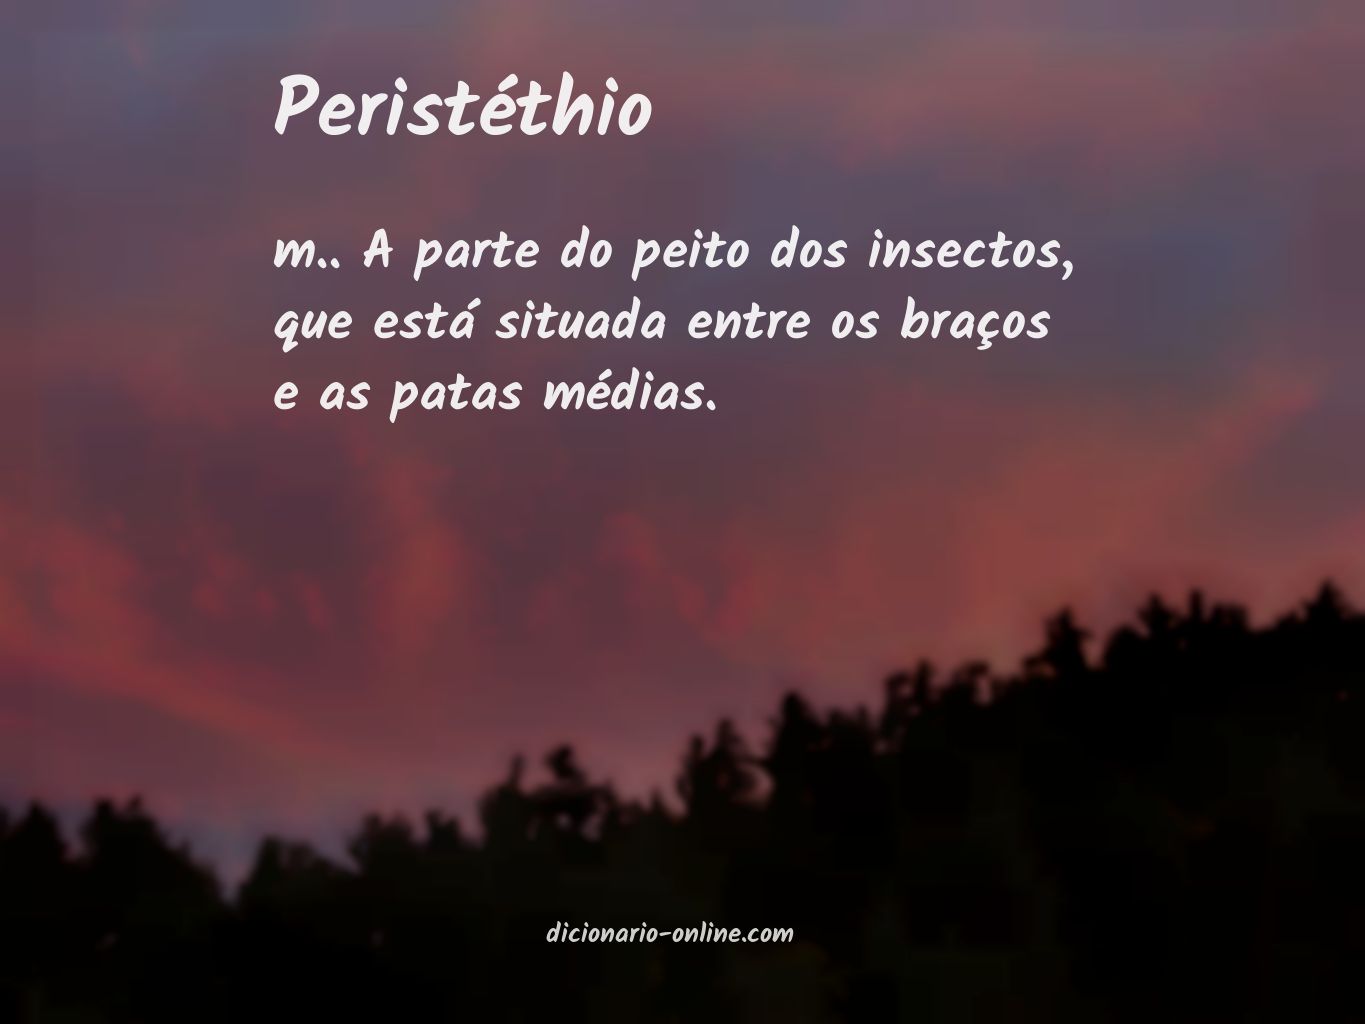 Significado de peristéthio